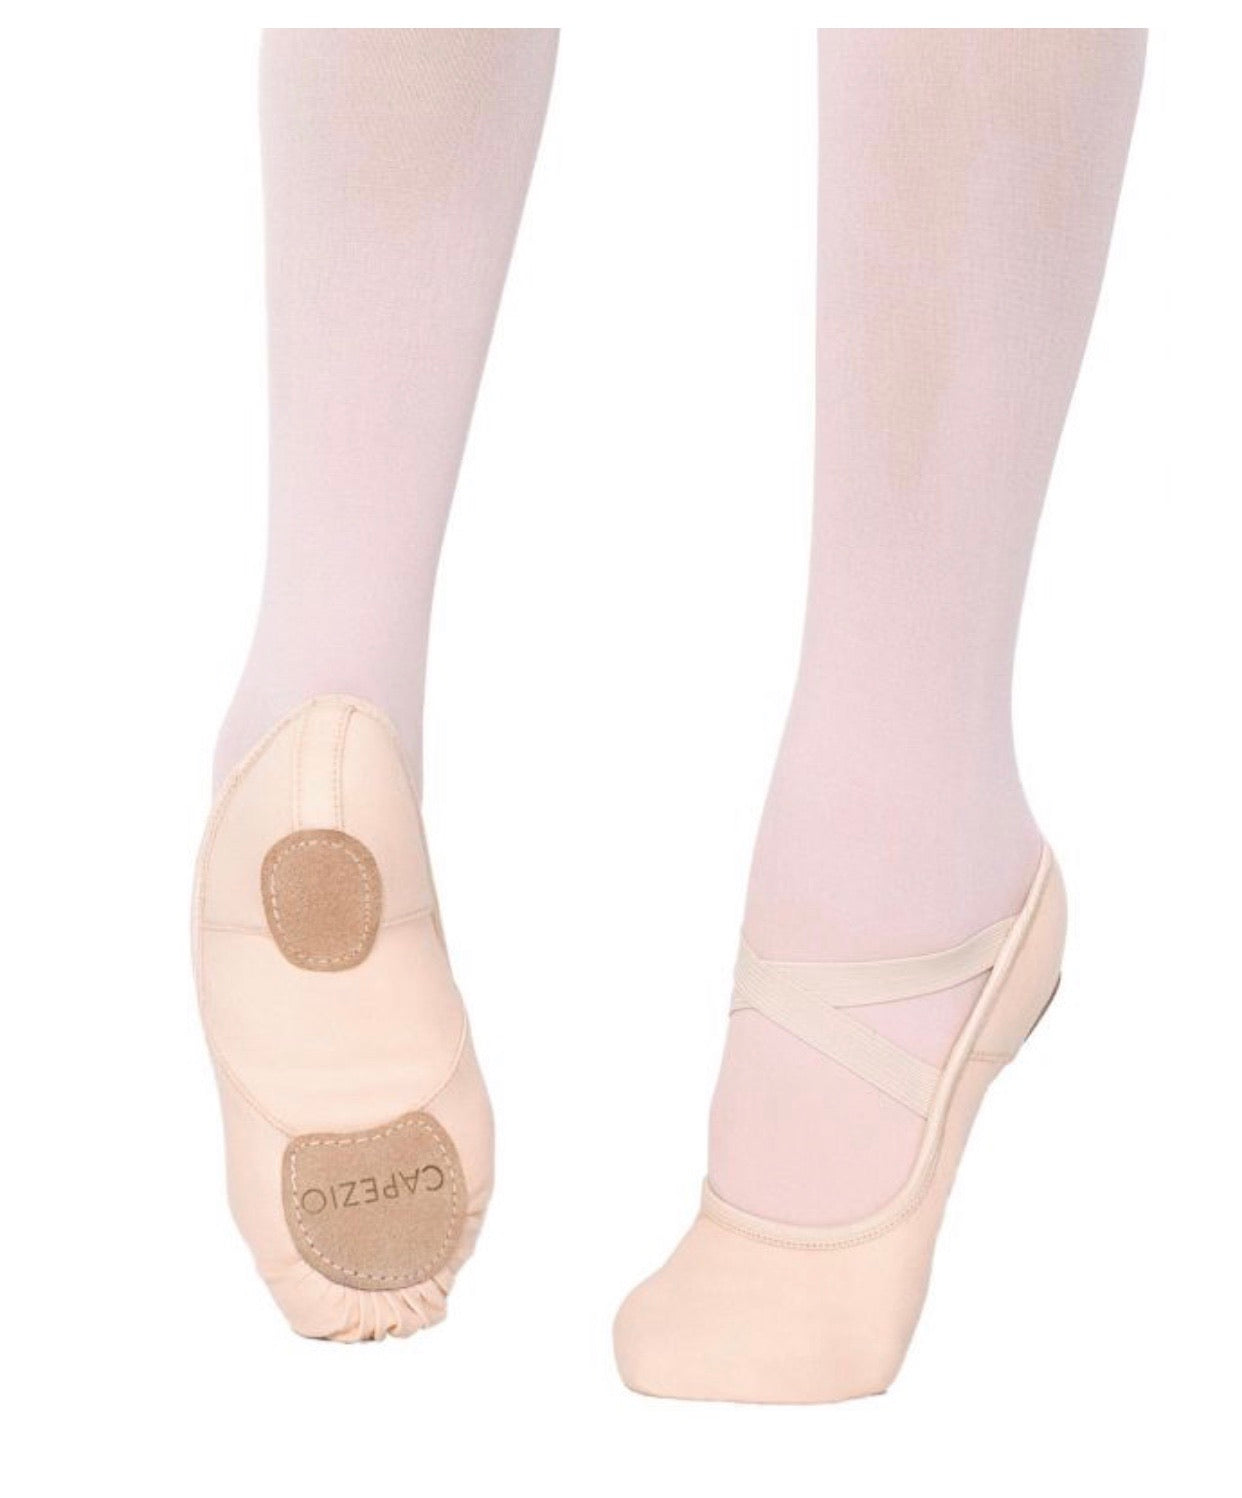 Capezio Hanami Ballet Shoes - Child